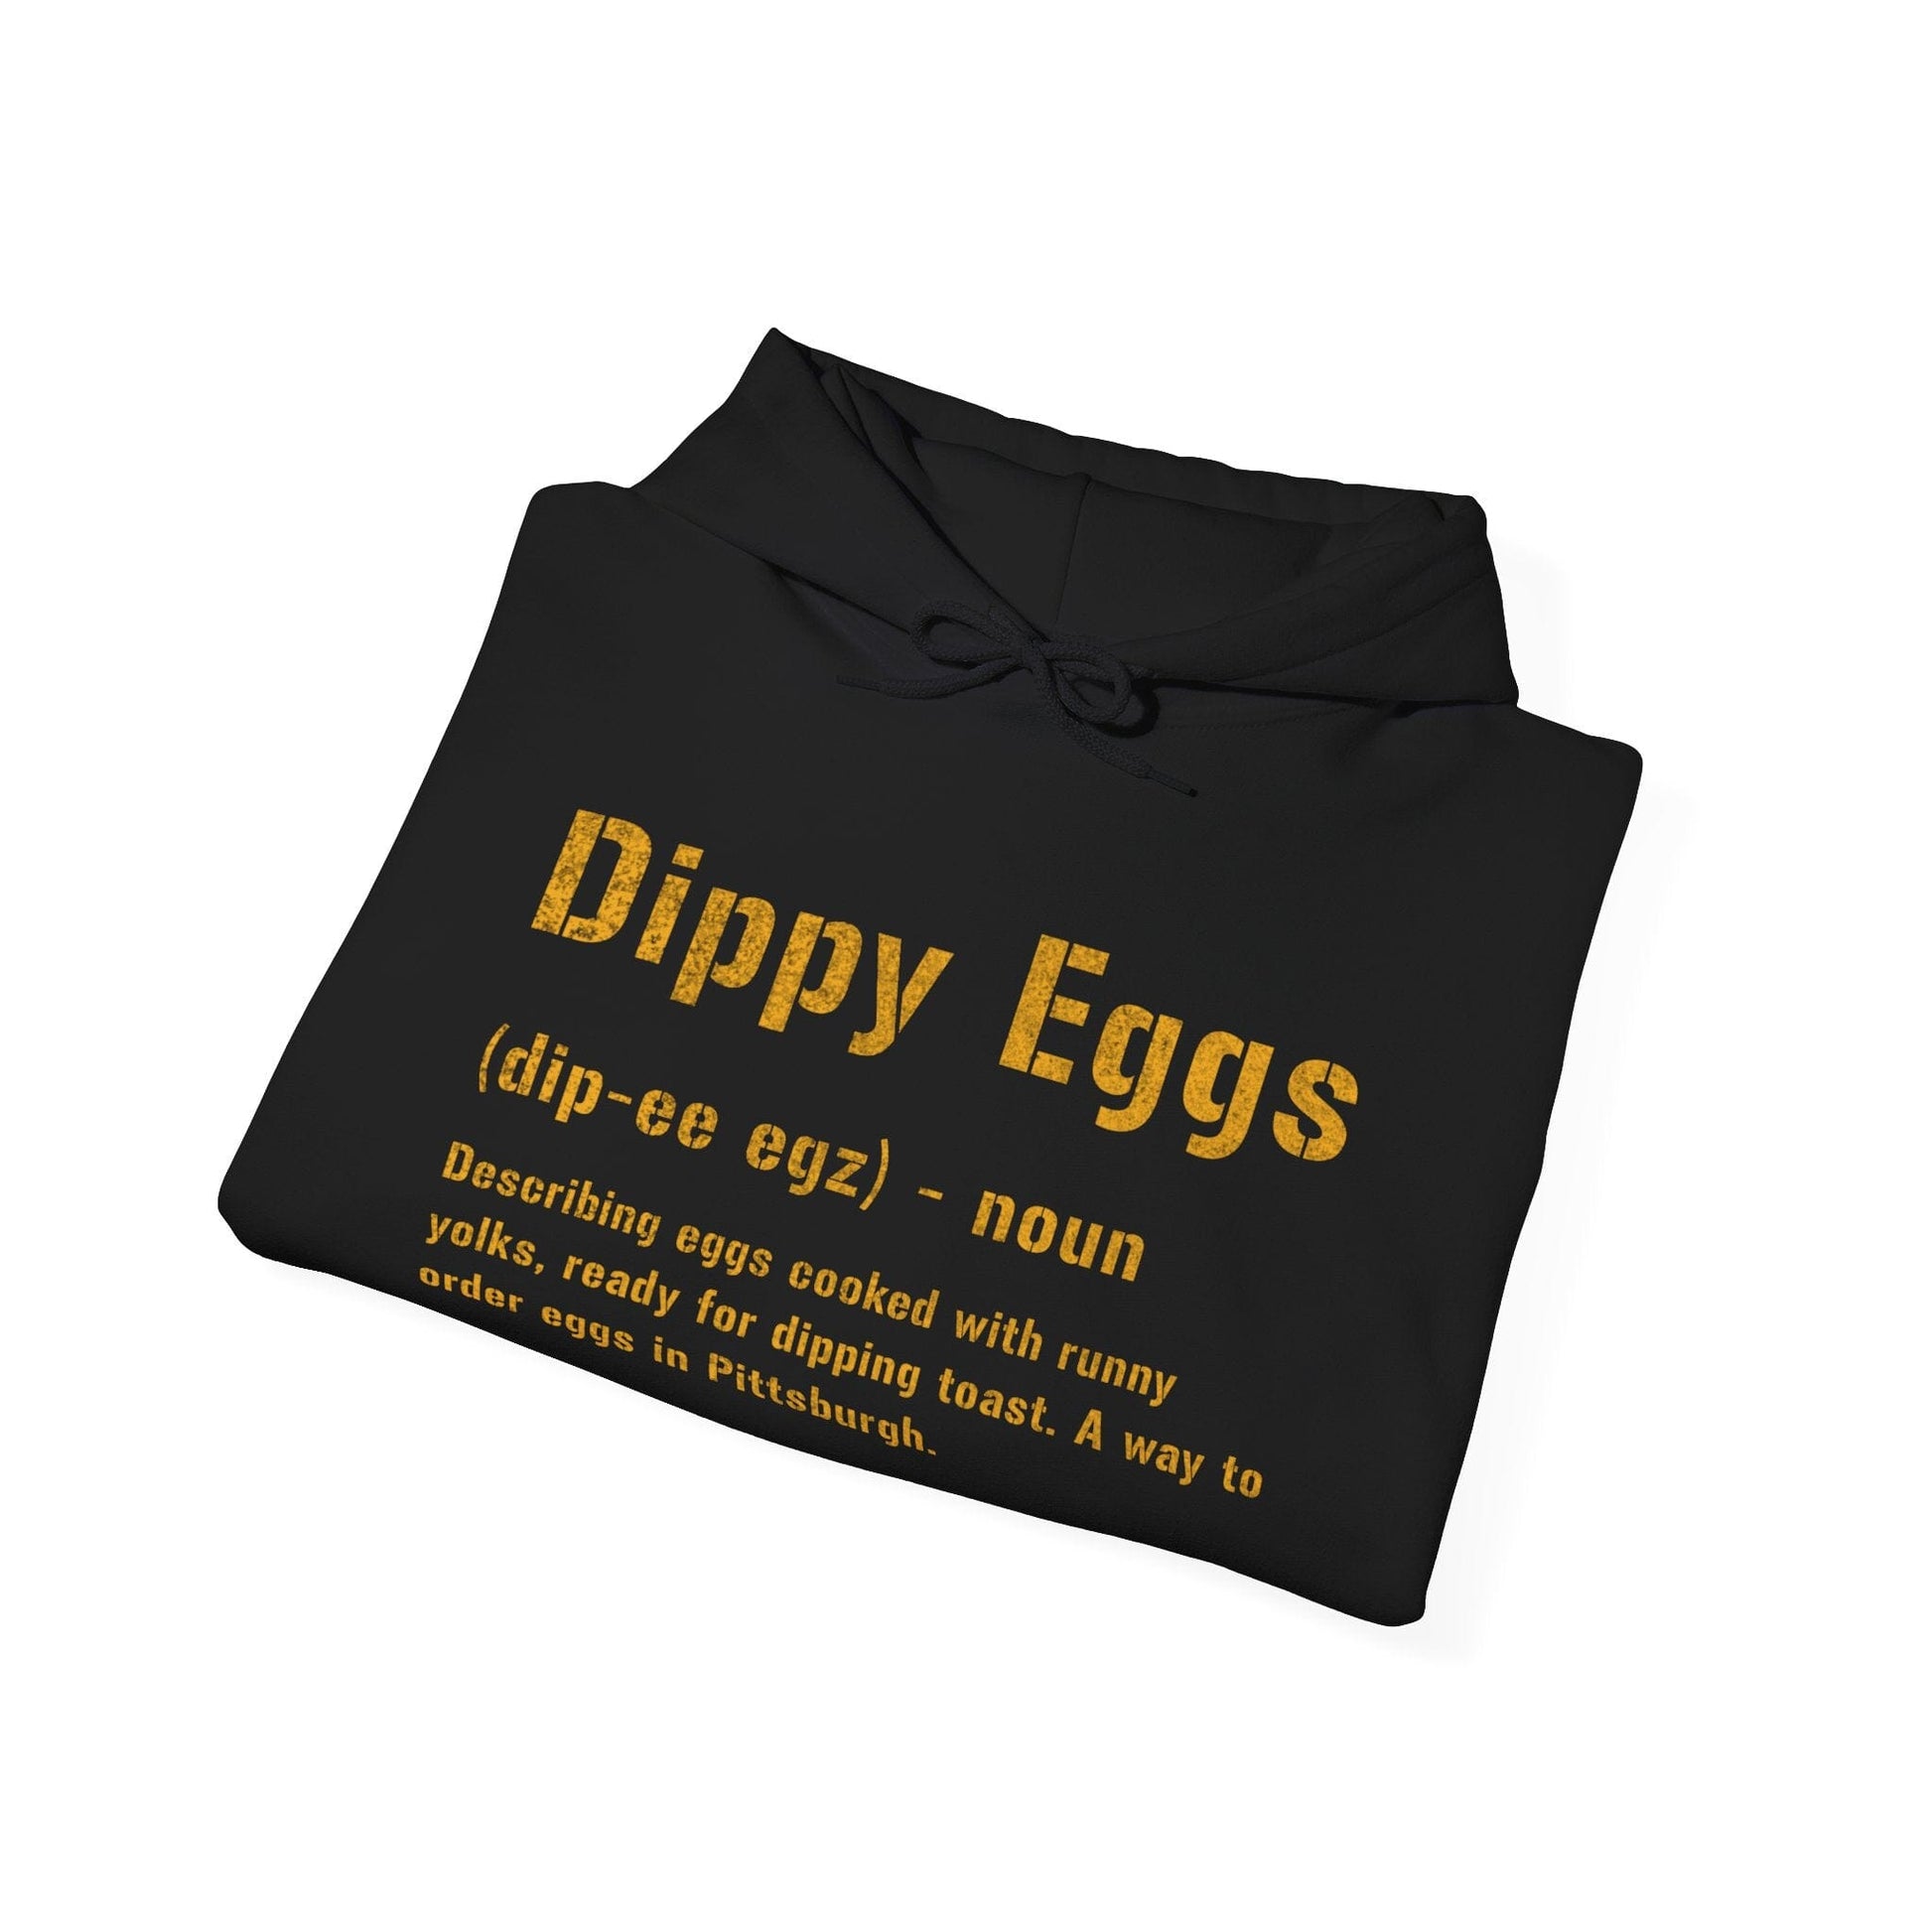 Dippy Eggs Yinzer Hoodie | Pittsburghese Apparel | Steel City Slang Hoodie Yinzergear 